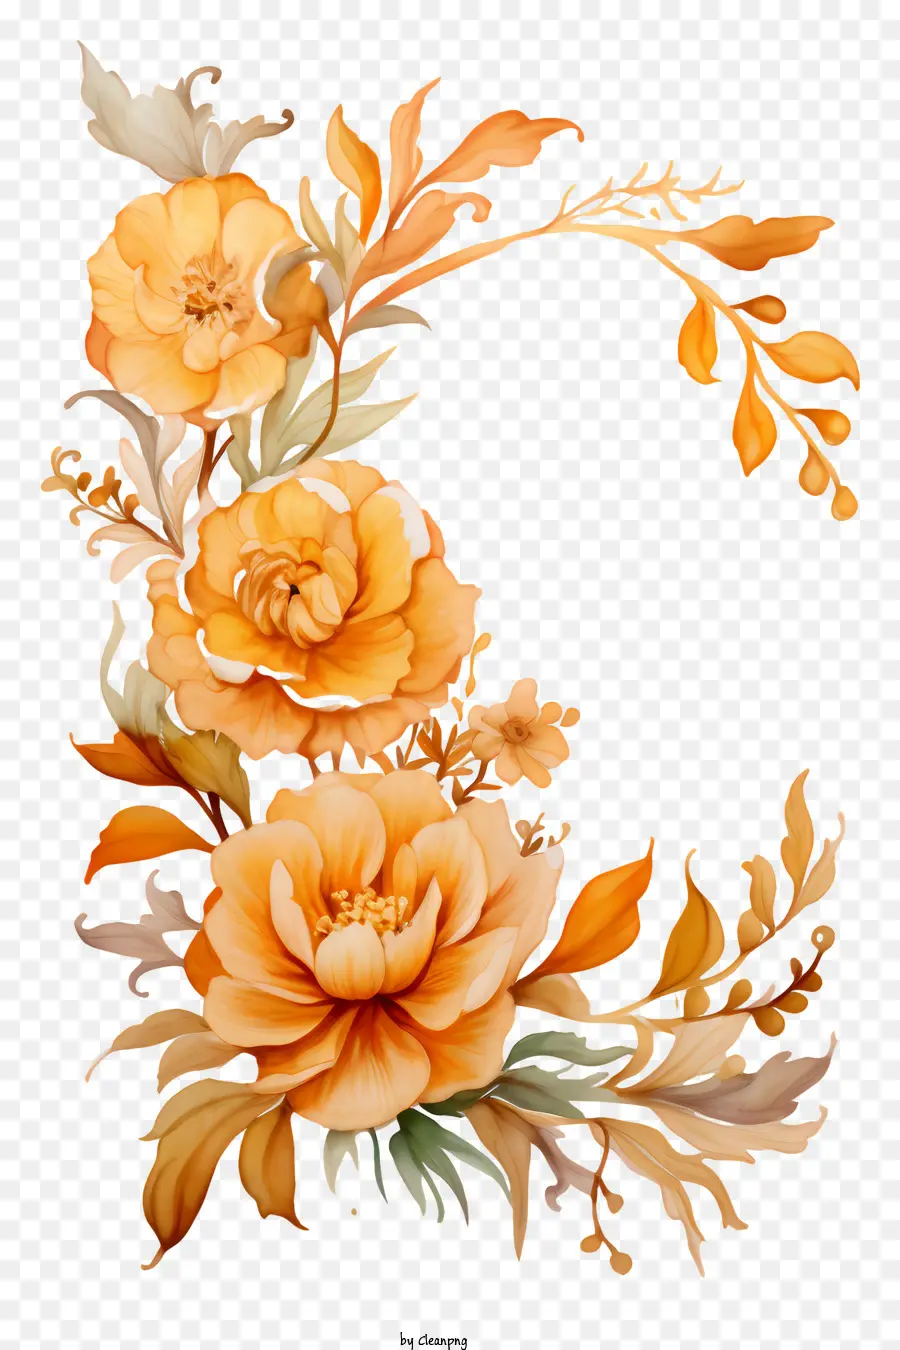 Bouquet di pittura ad acquerello di fiori arancioni foglie e viti Forma rotonda di forma ghirlanda - Pittura dettagliata ad acquerello di ghirlanda floreale arancione